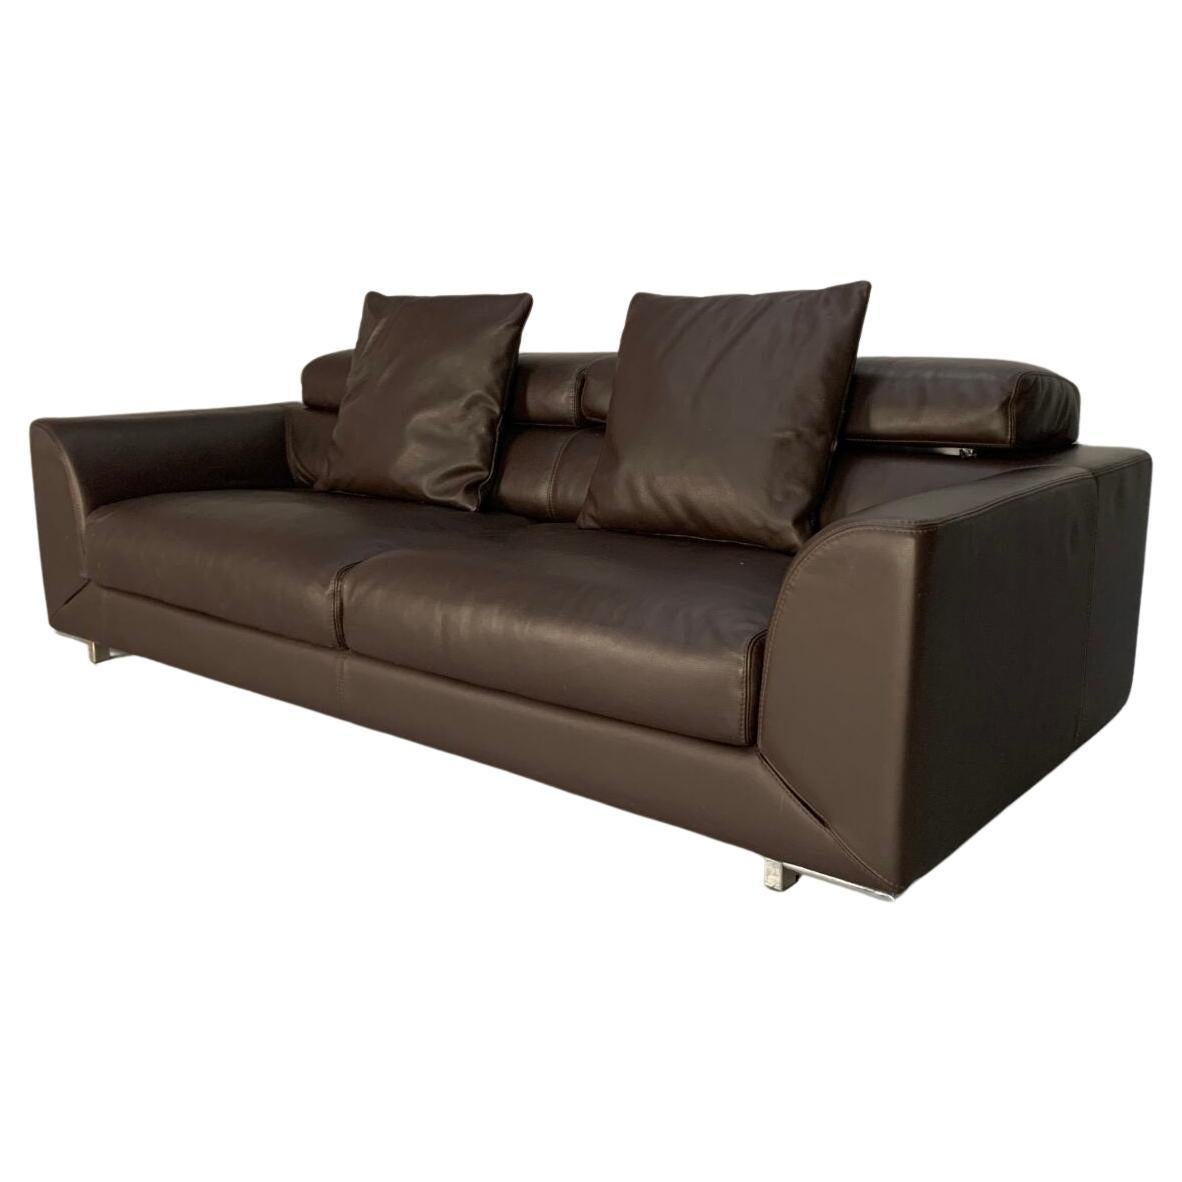 Roche Bobois 3-Seat Sofa  - In Dark Brown Leather